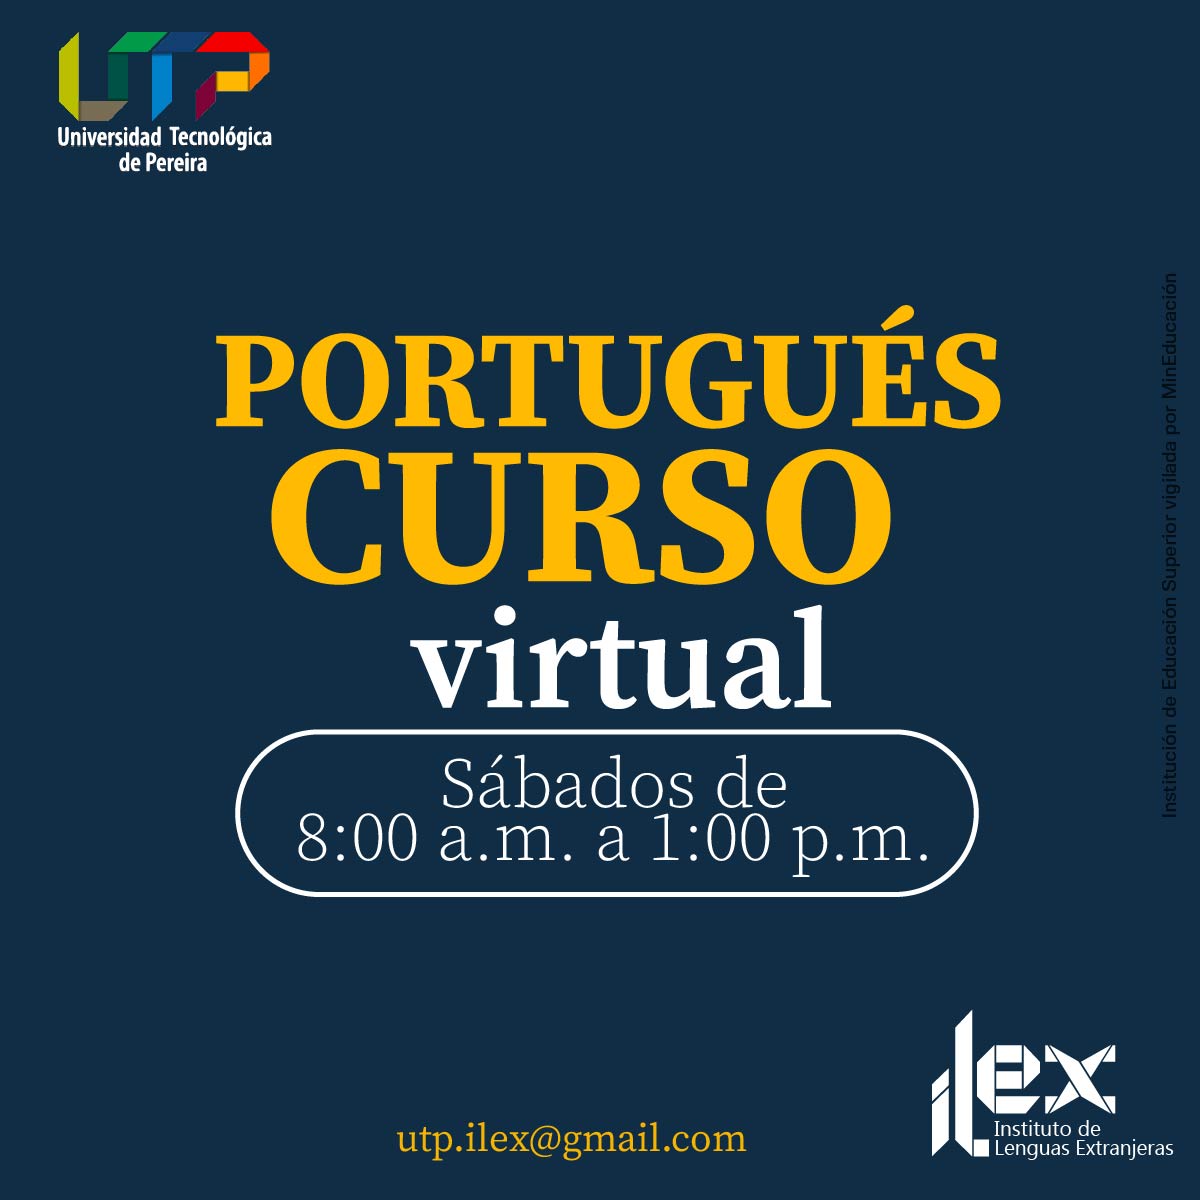 Matricúlate al Curso Virtual de Portugués